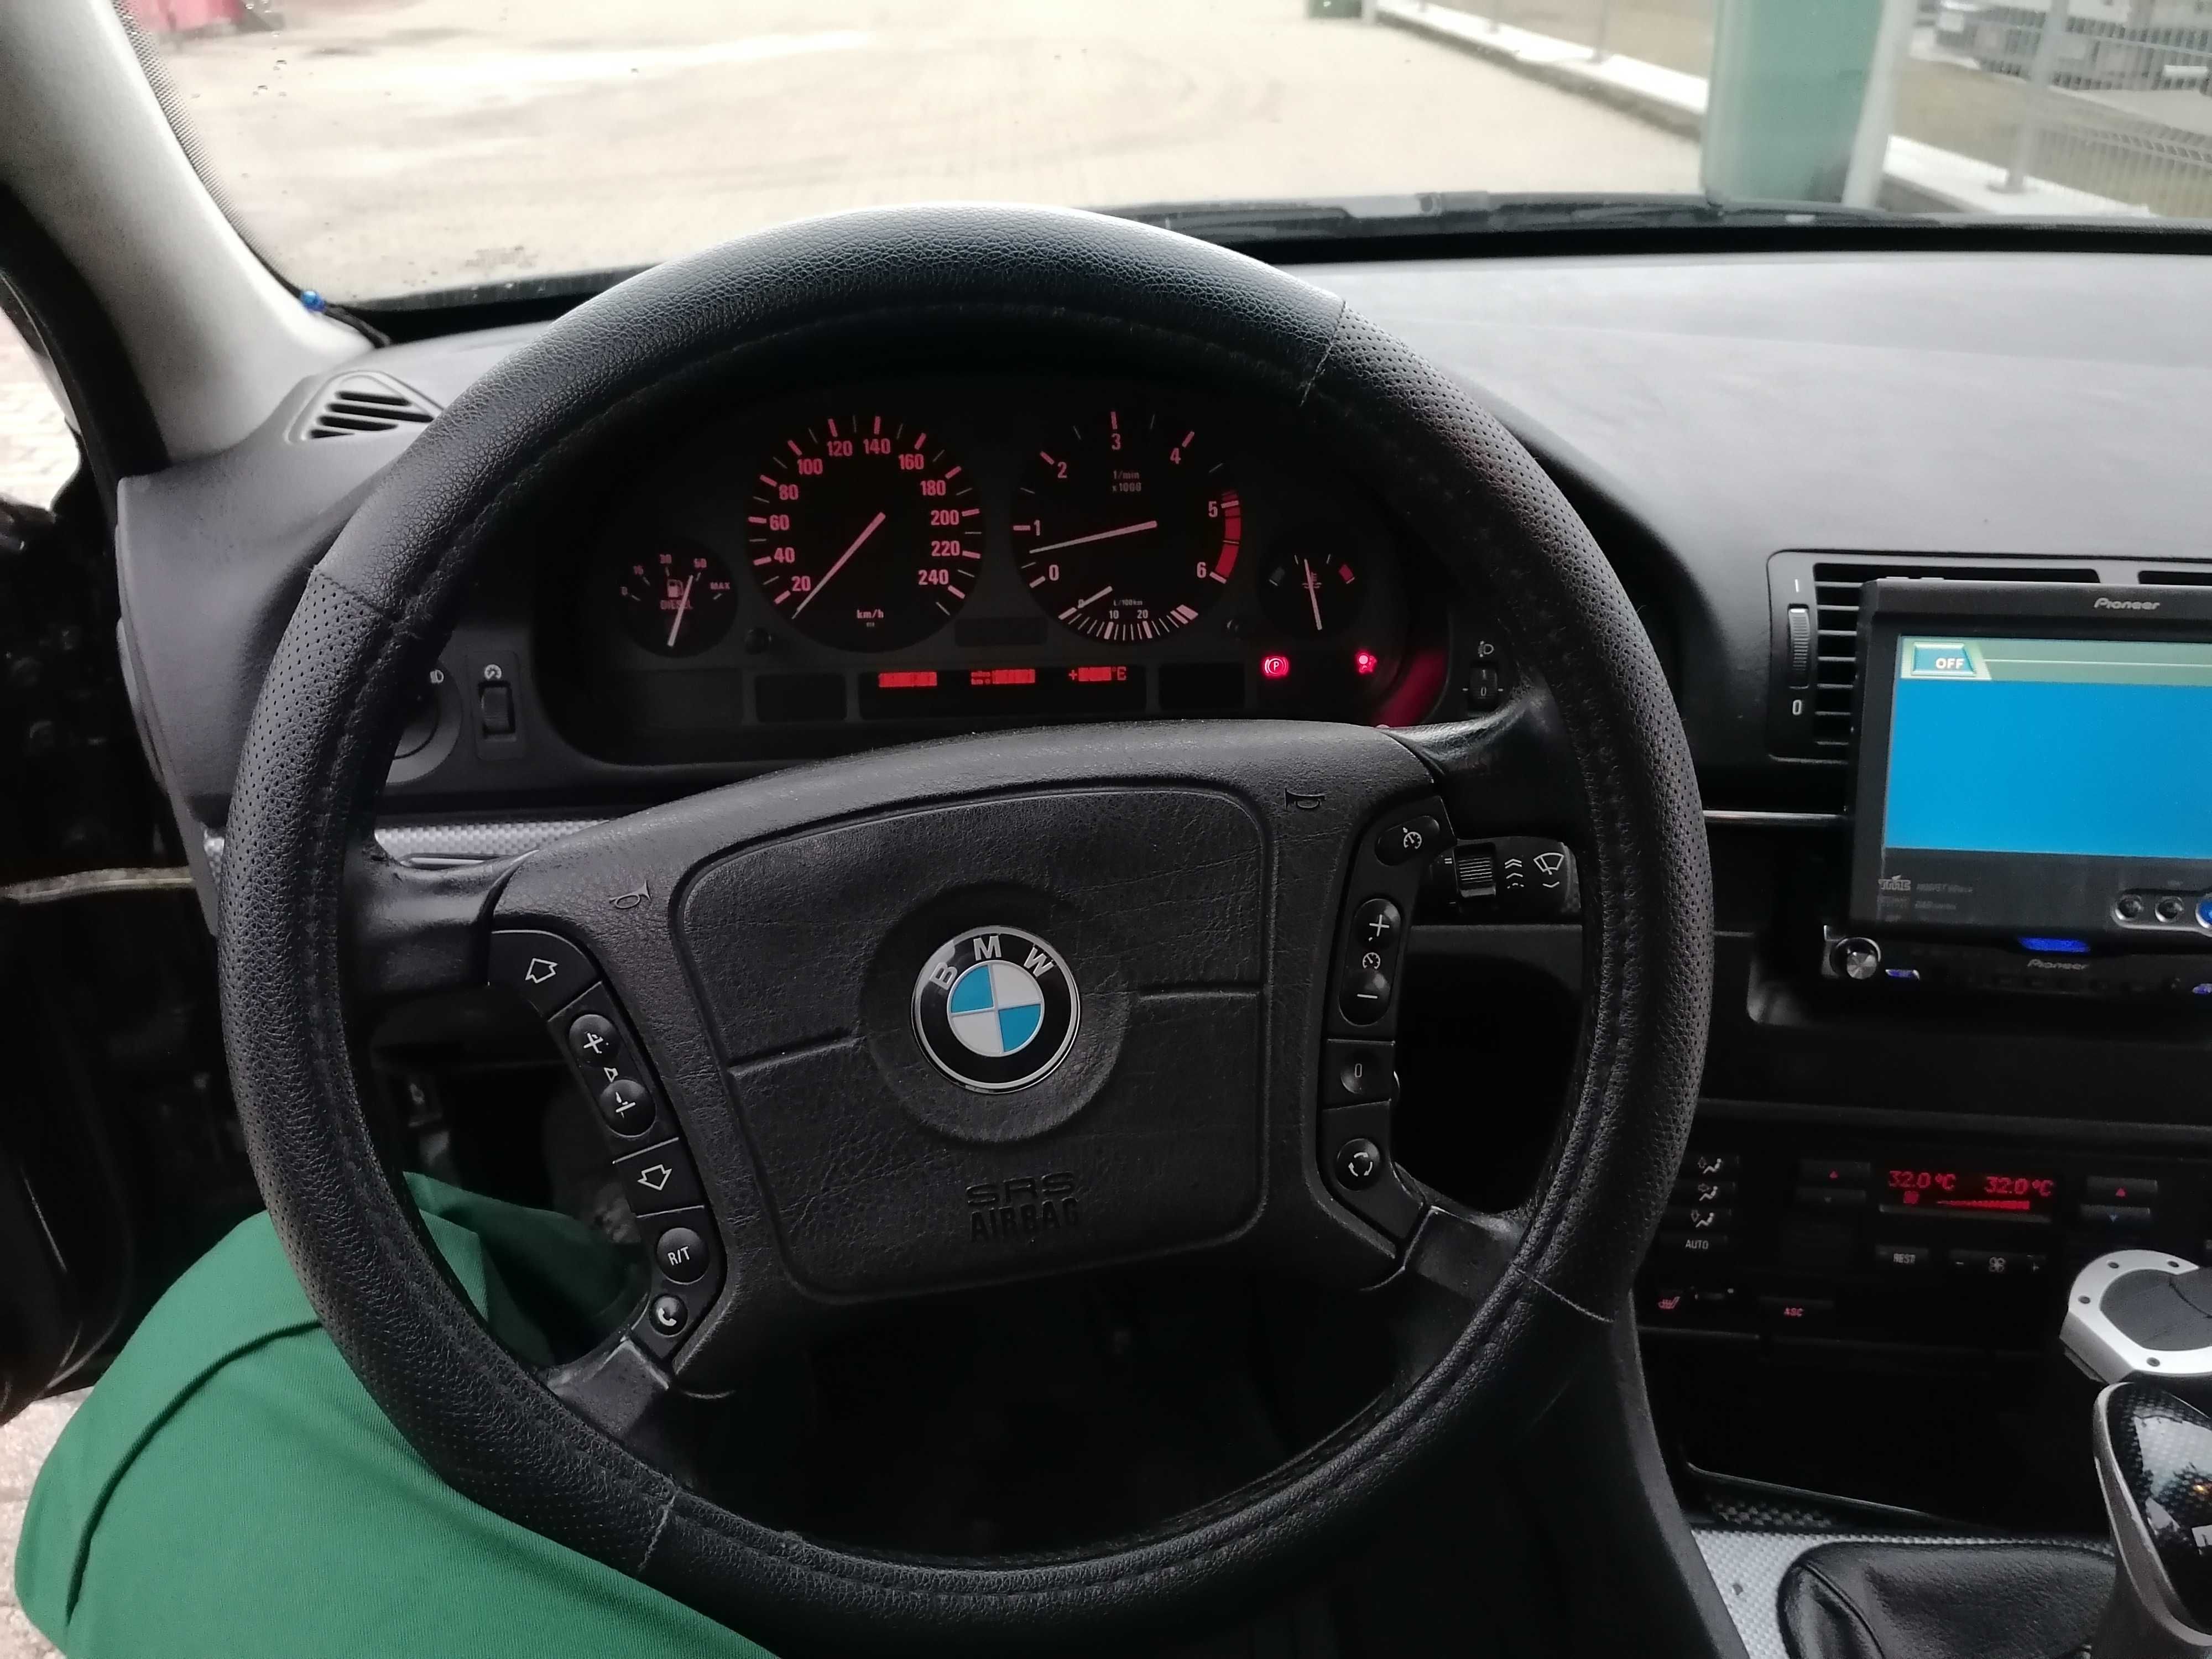 BMW 525TDS 1996 2500CC